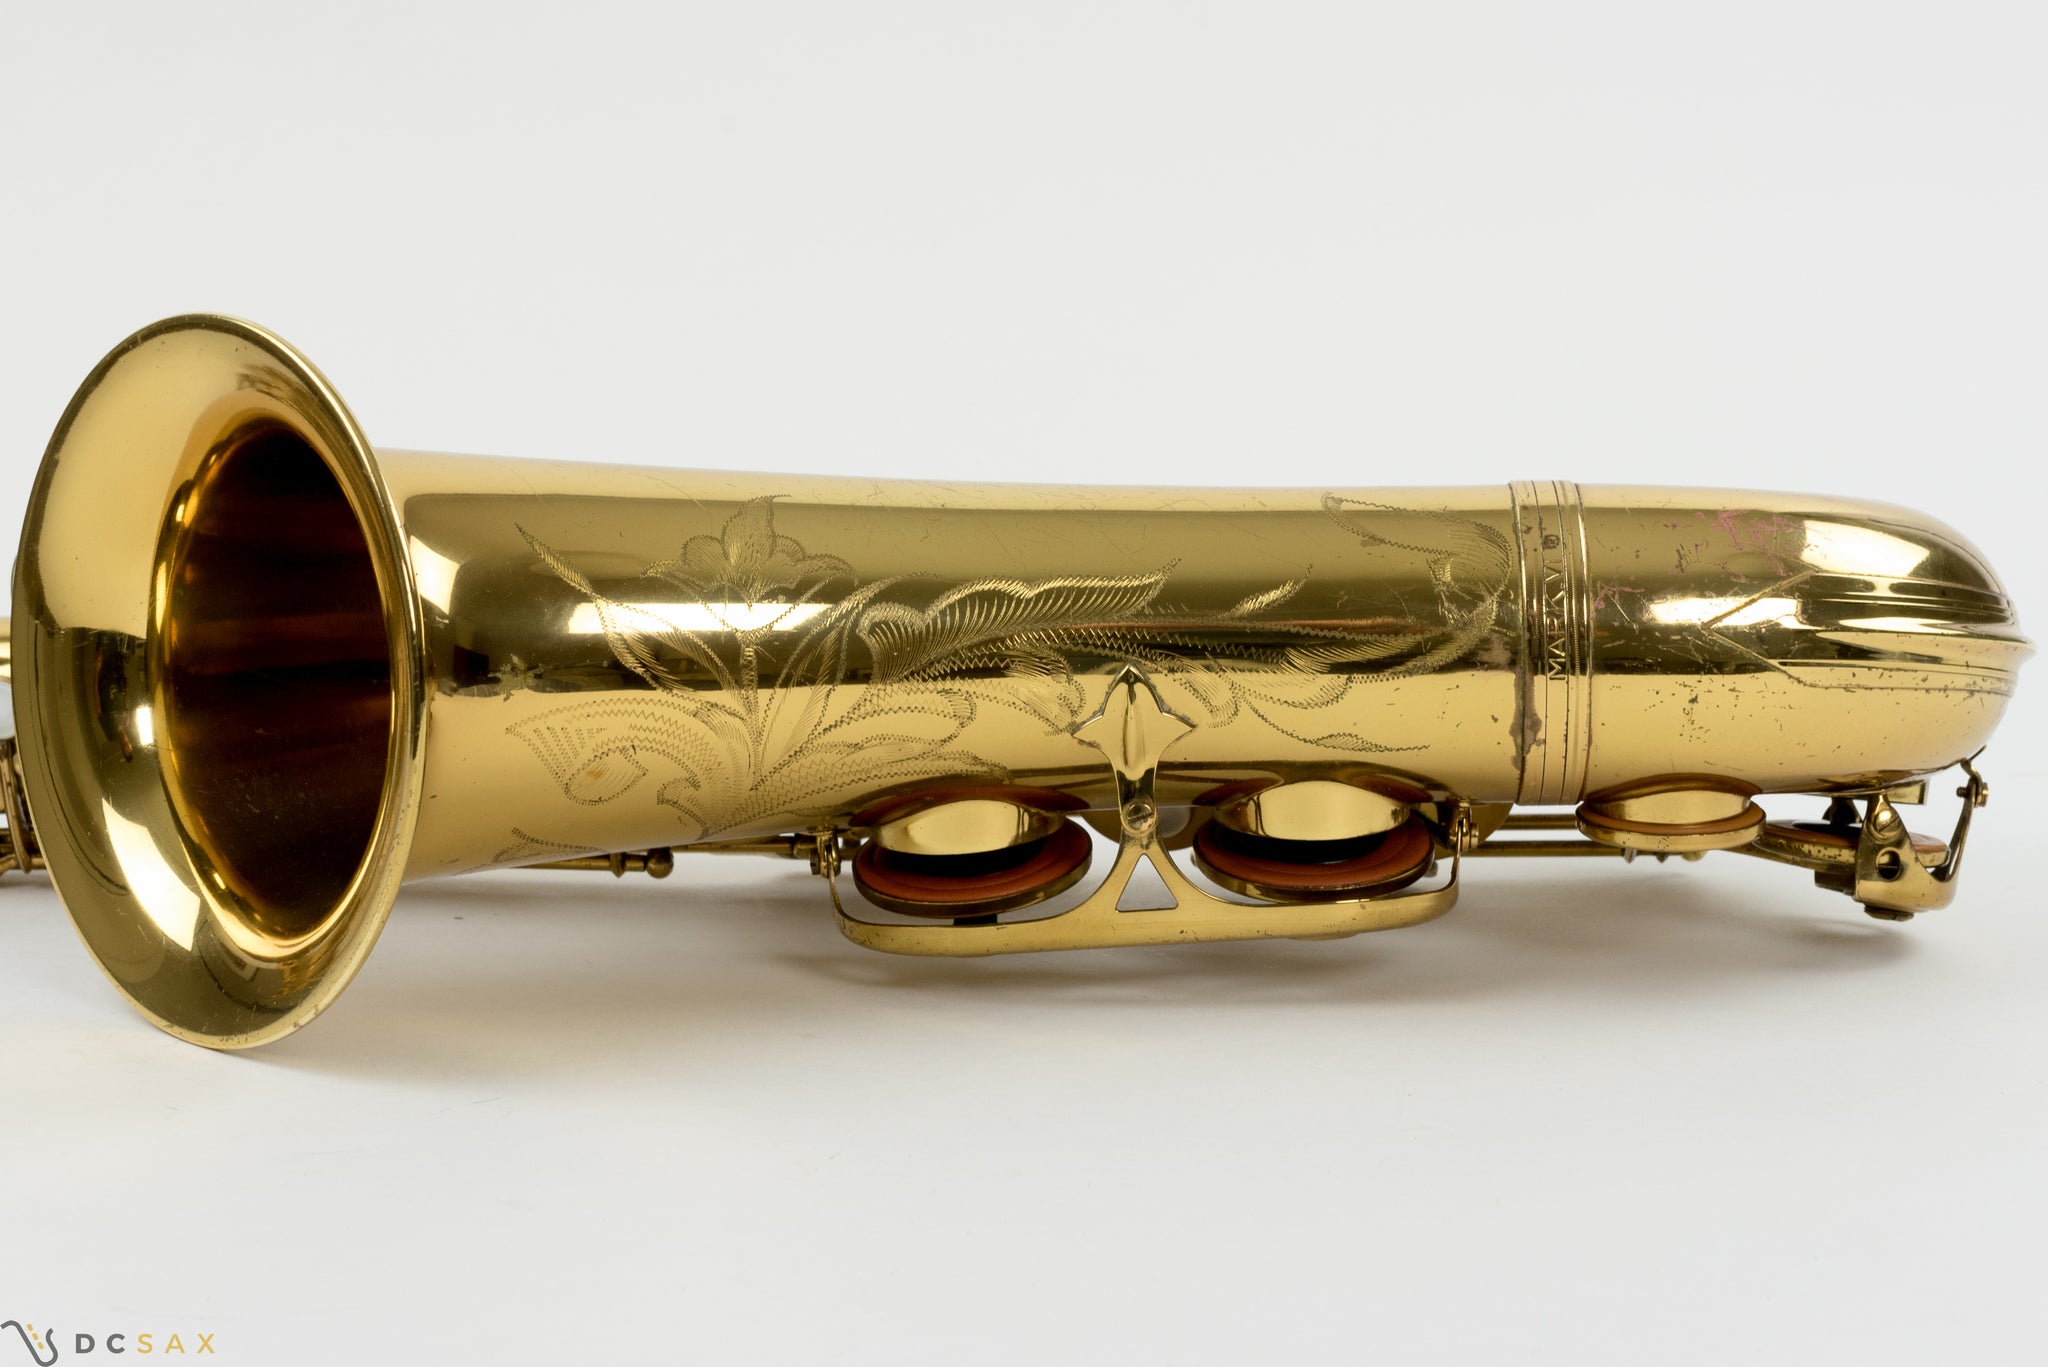 226,xxx Selmer Mark VI Tenor Saxophone, 97% Original Lacquer